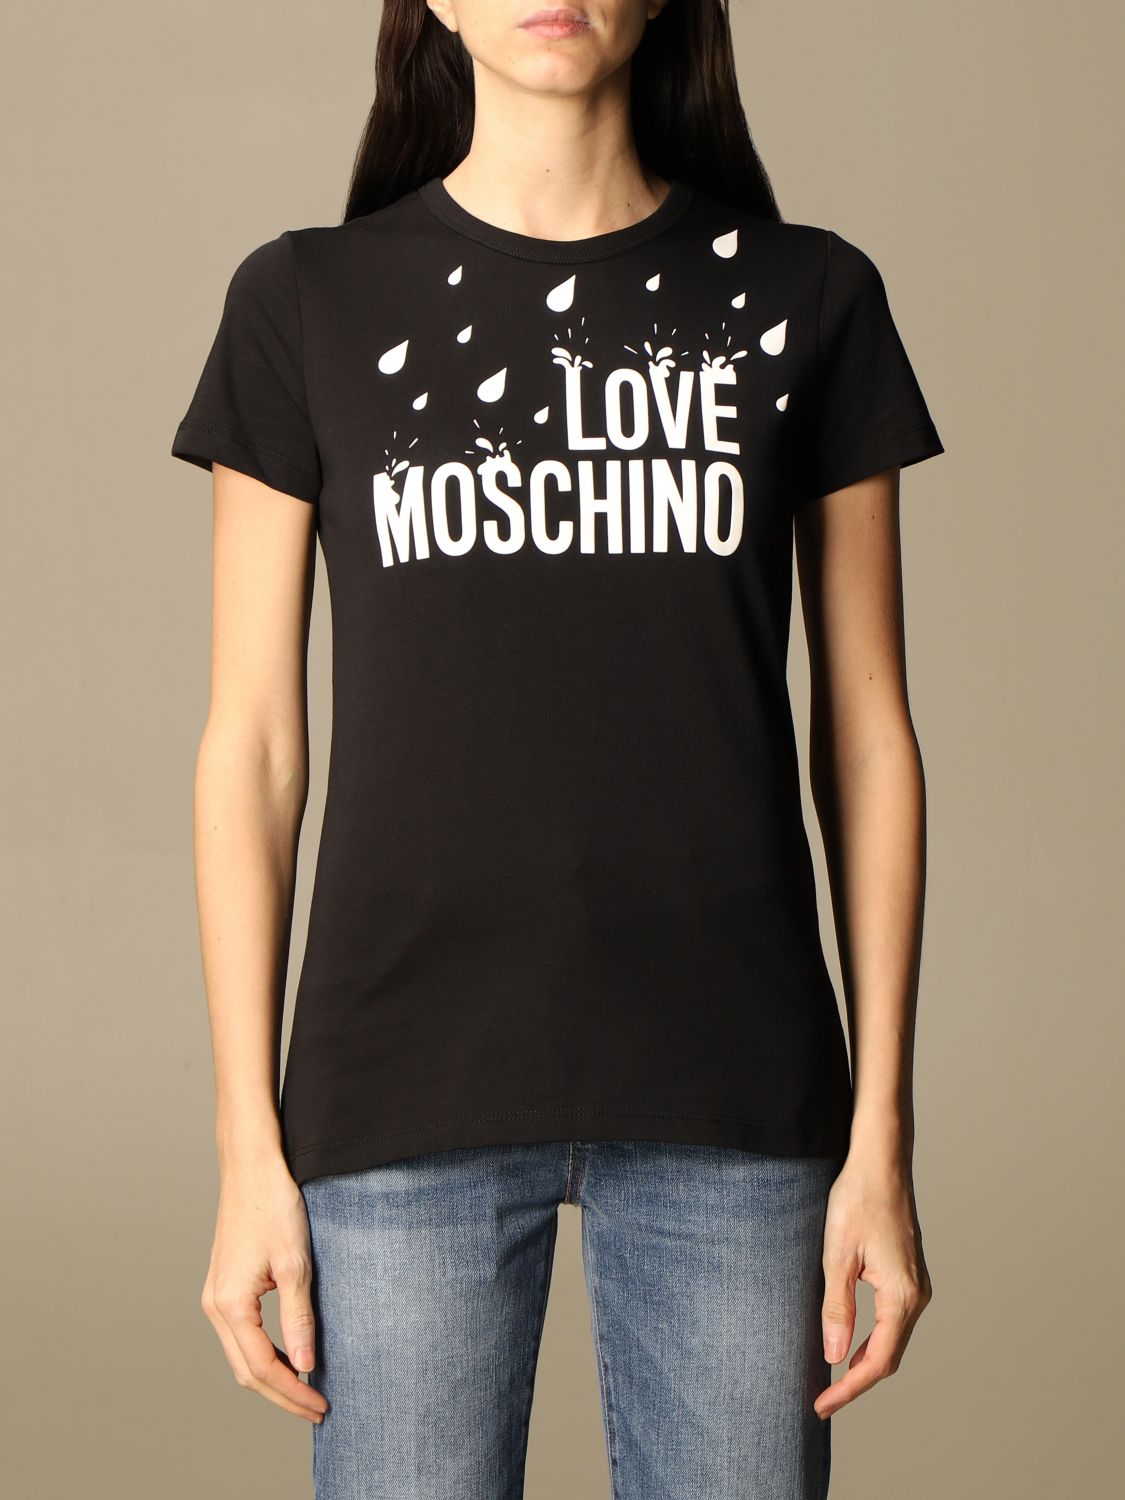 t shirt moschino love